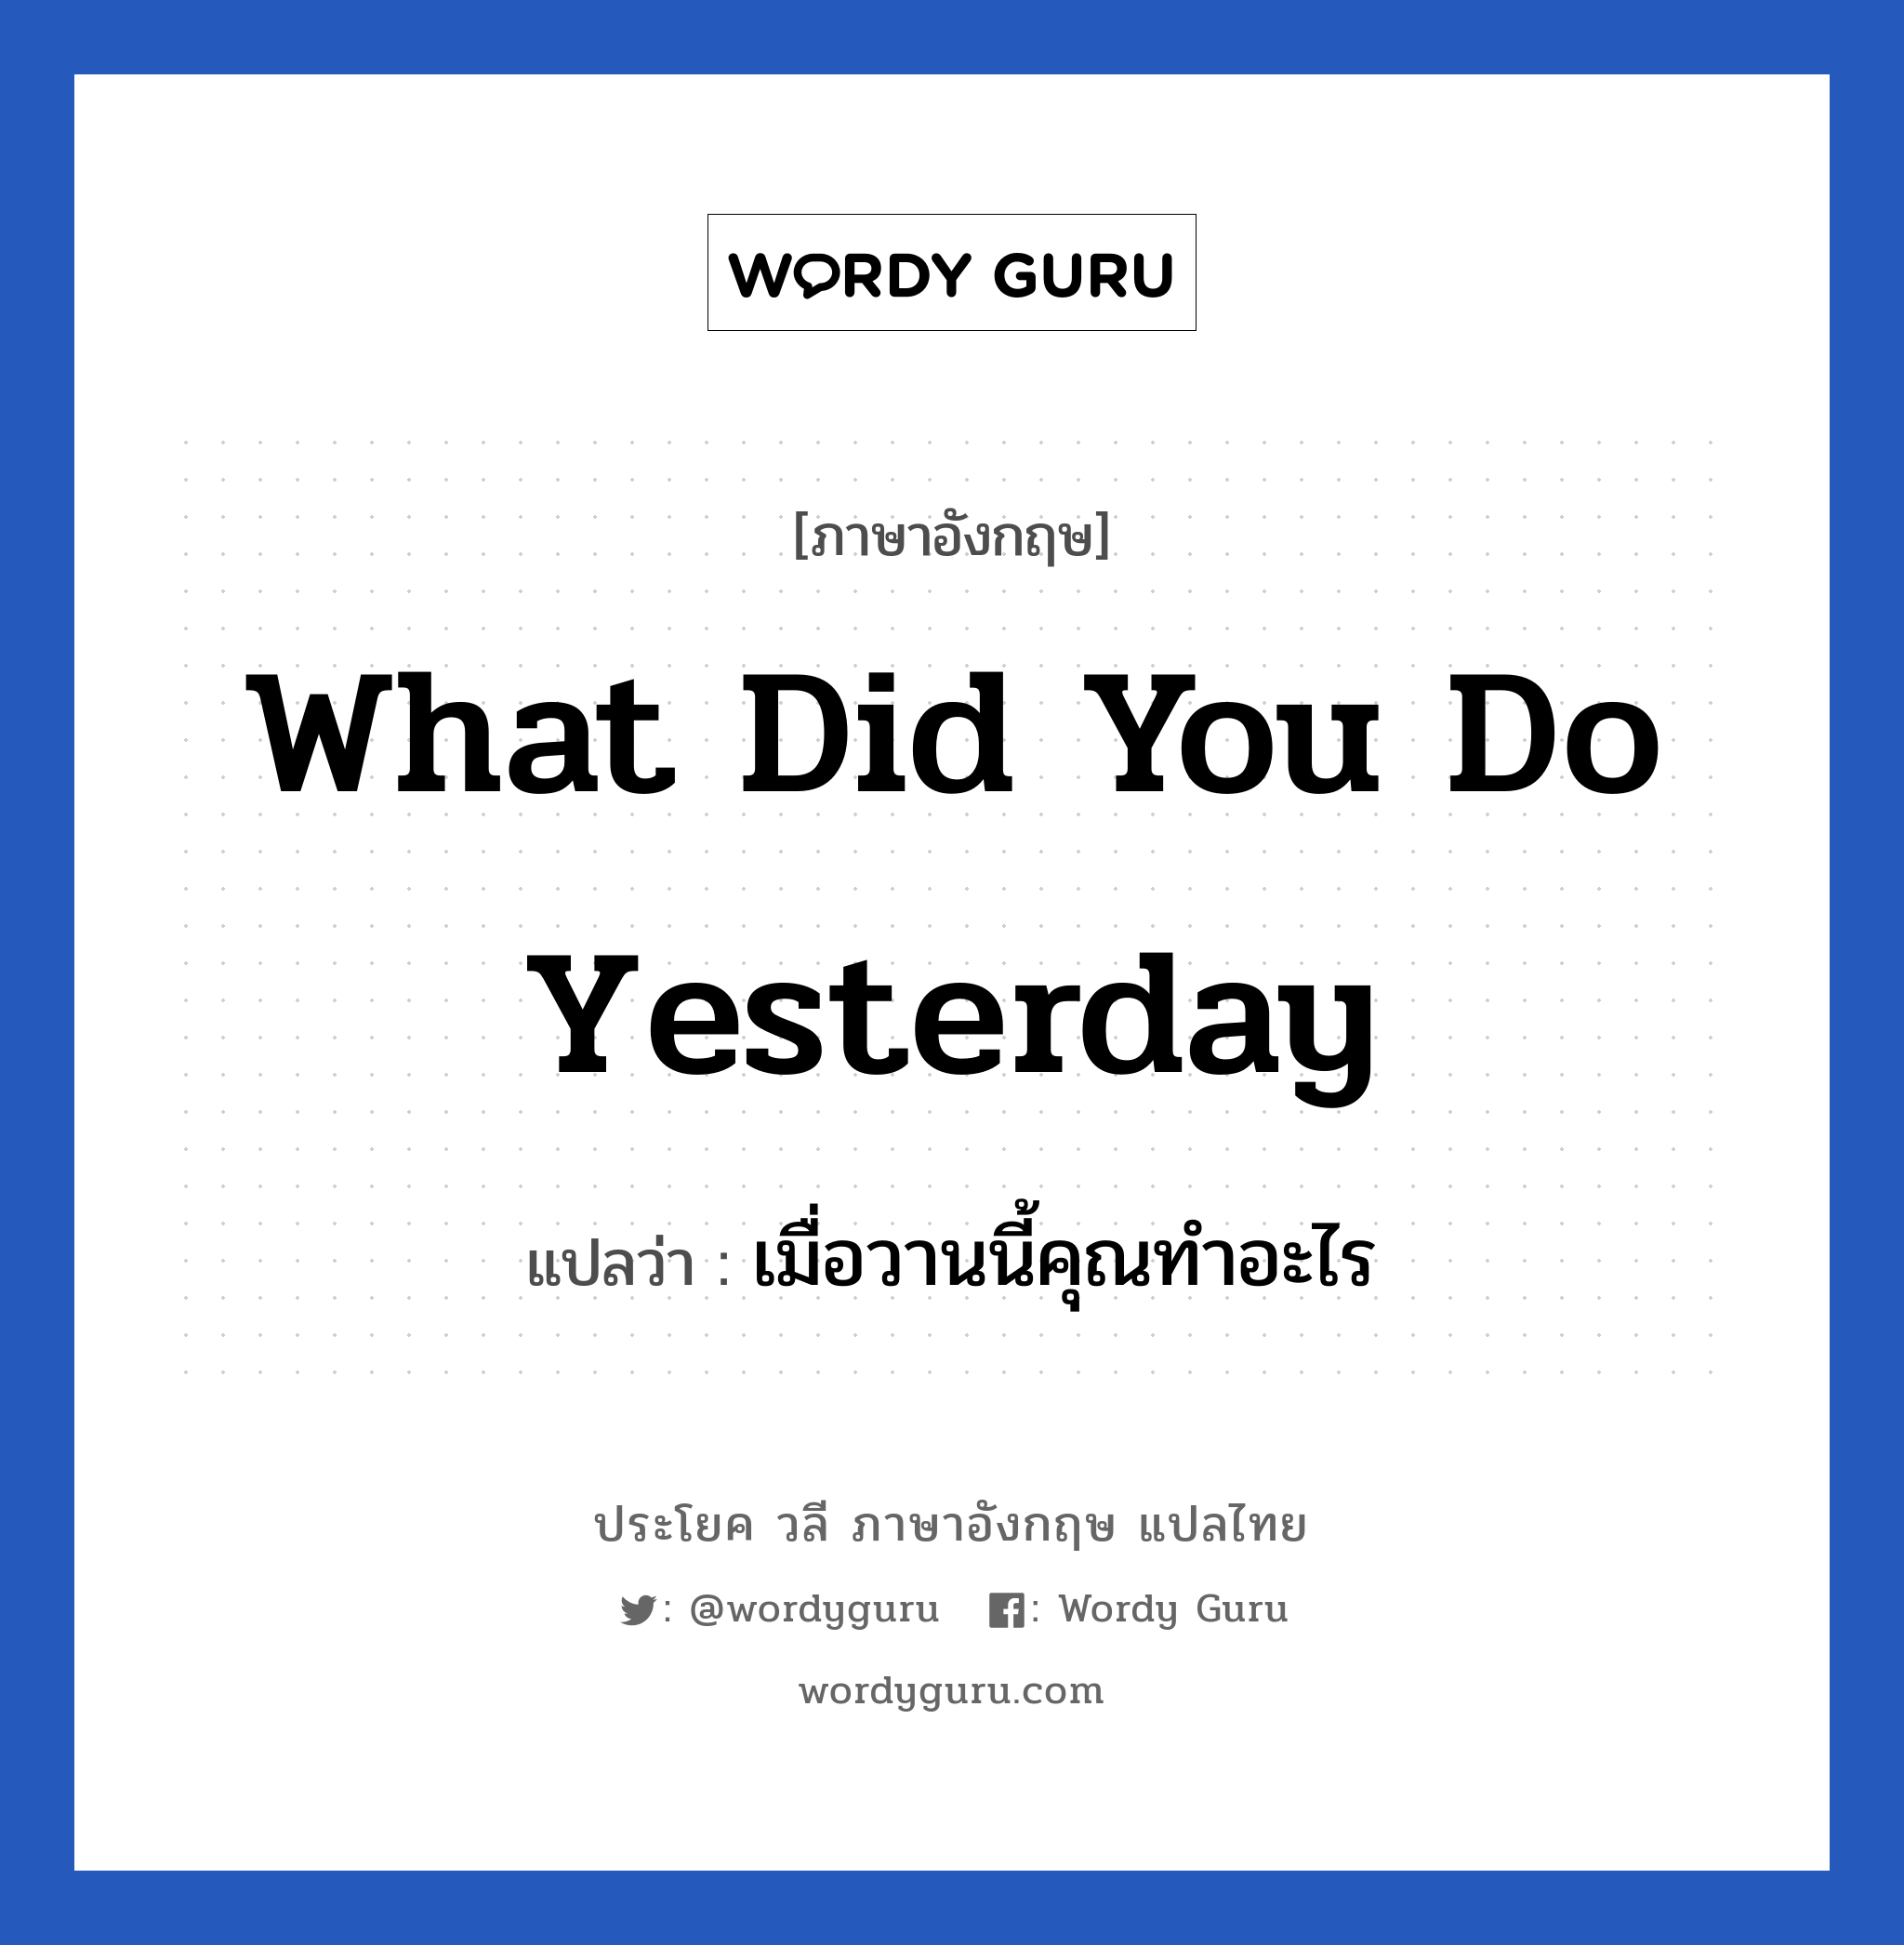 เมื่อวานนี้คุณทำอะไร ภาษาอังกฤษ?, วลีภาษาอังกฤษ เมื่อวานนี้คุณทำอะไร แปลว่า What did you do yesterday